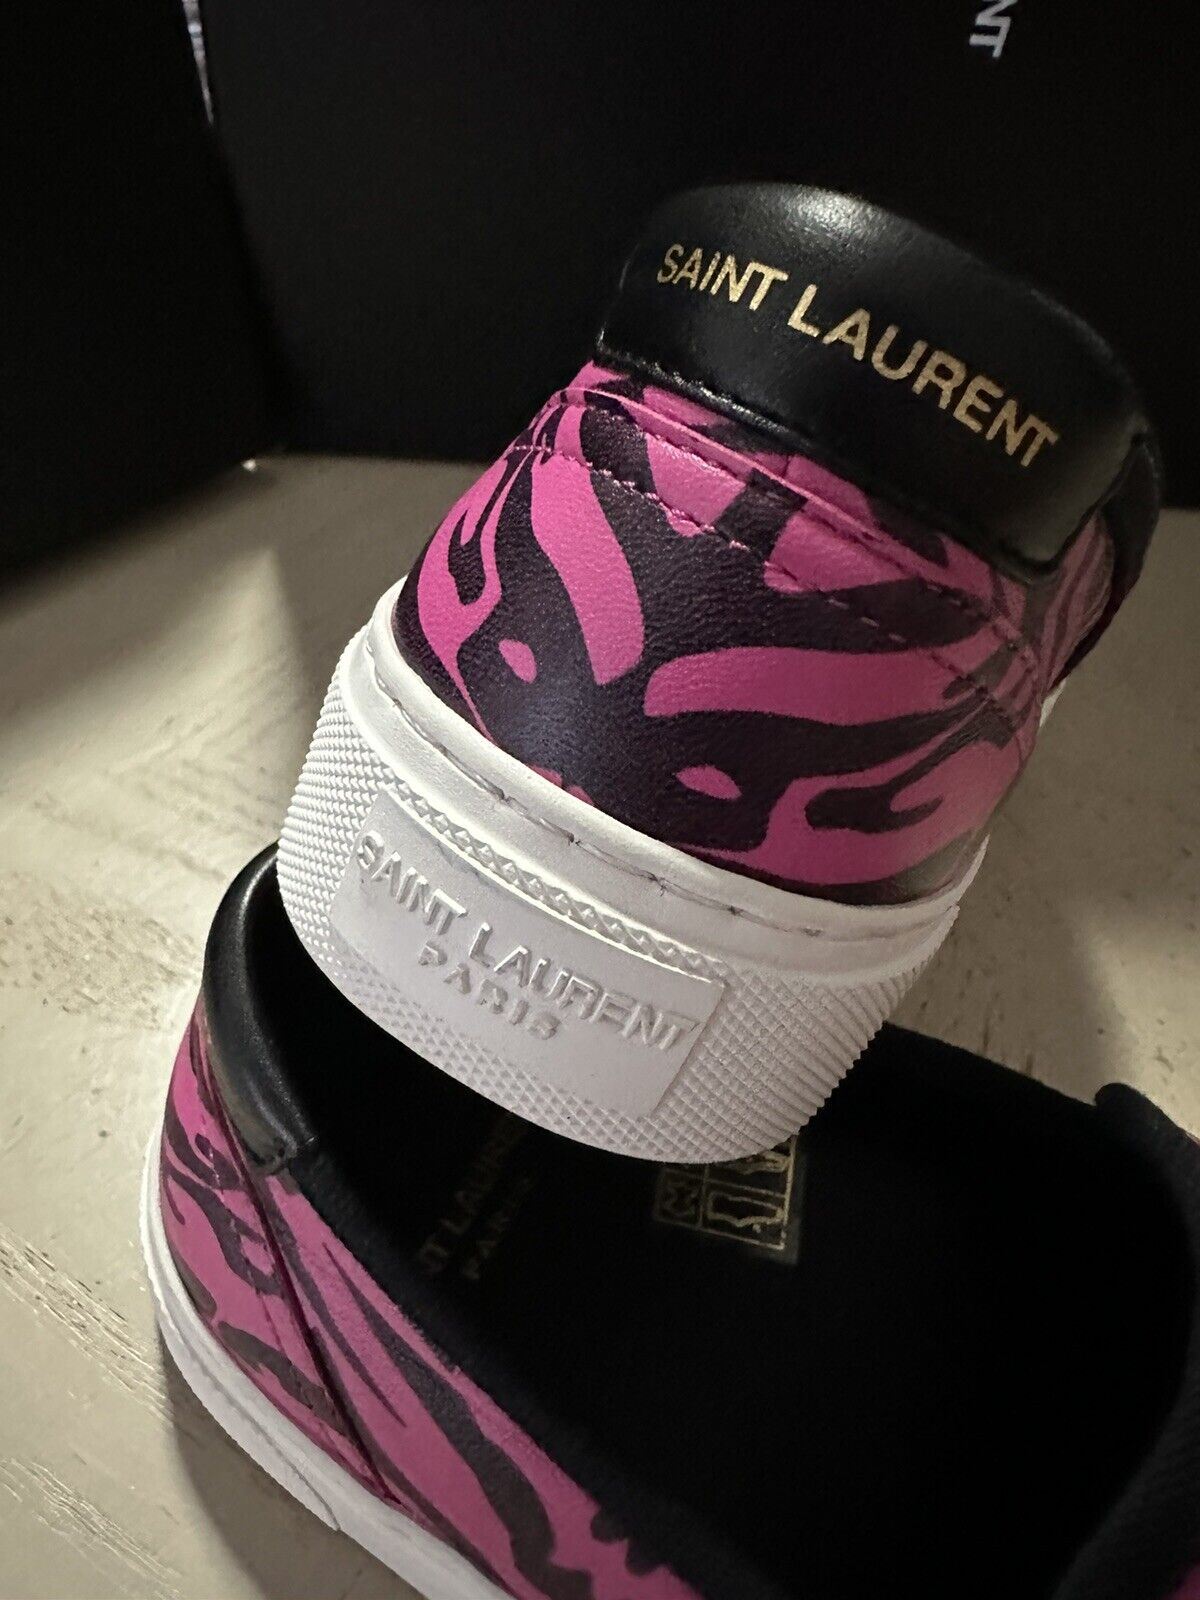 NIB $525 Saint Laurent Женские кожаные кроссовки Черный/Розовый 7,5 США/37,5 ЕС 585746